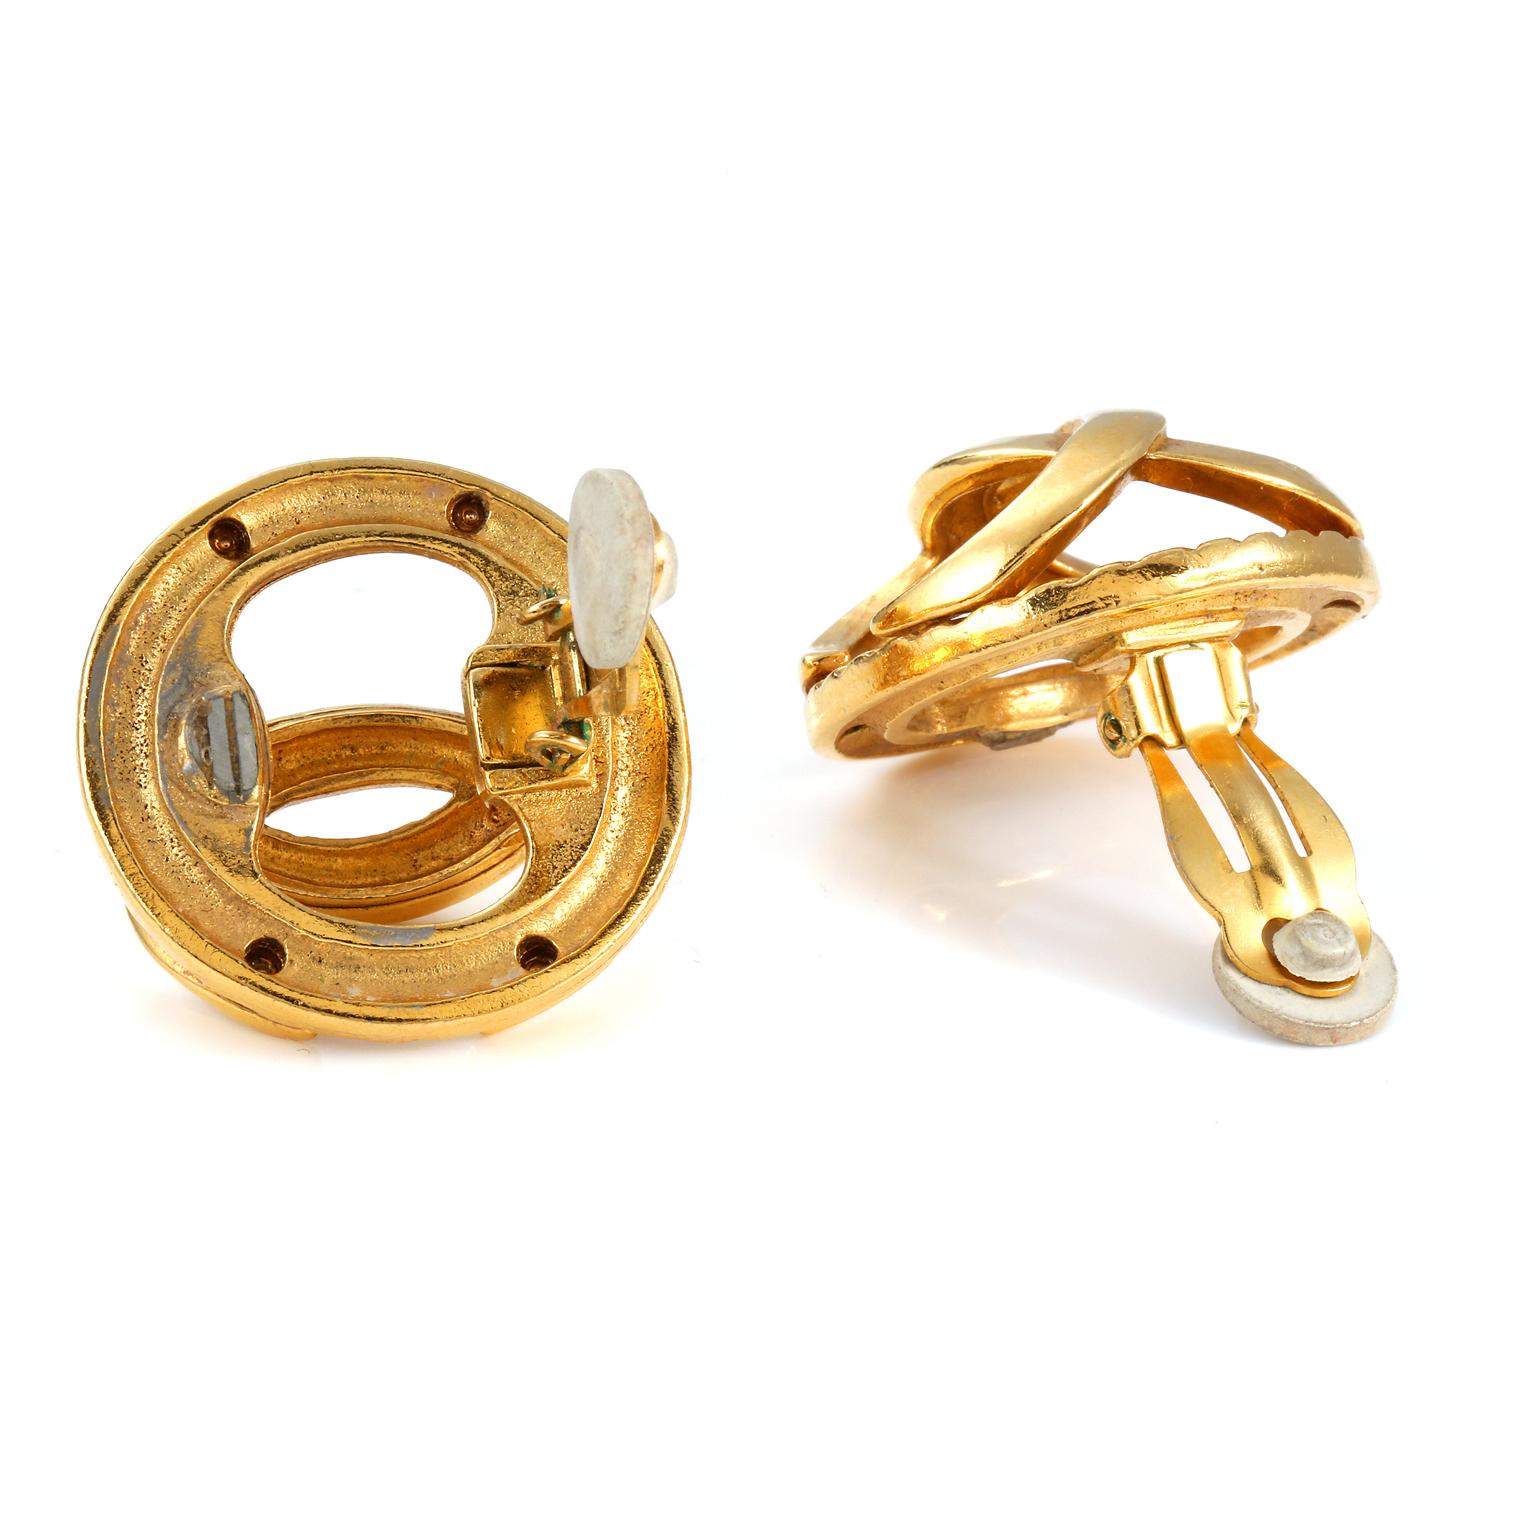 Diese authentischen Chanel Gold CC Cage Ohrringe sind in sehr gutem Vintage-Zustand.  Die ineinandergreifenden CC aus Gold in einer konvexen Formation bilden einen dreidimensionalen Käfig-Ohrring.  Clipverschluss. Inklusive Tasche oder Box. 

